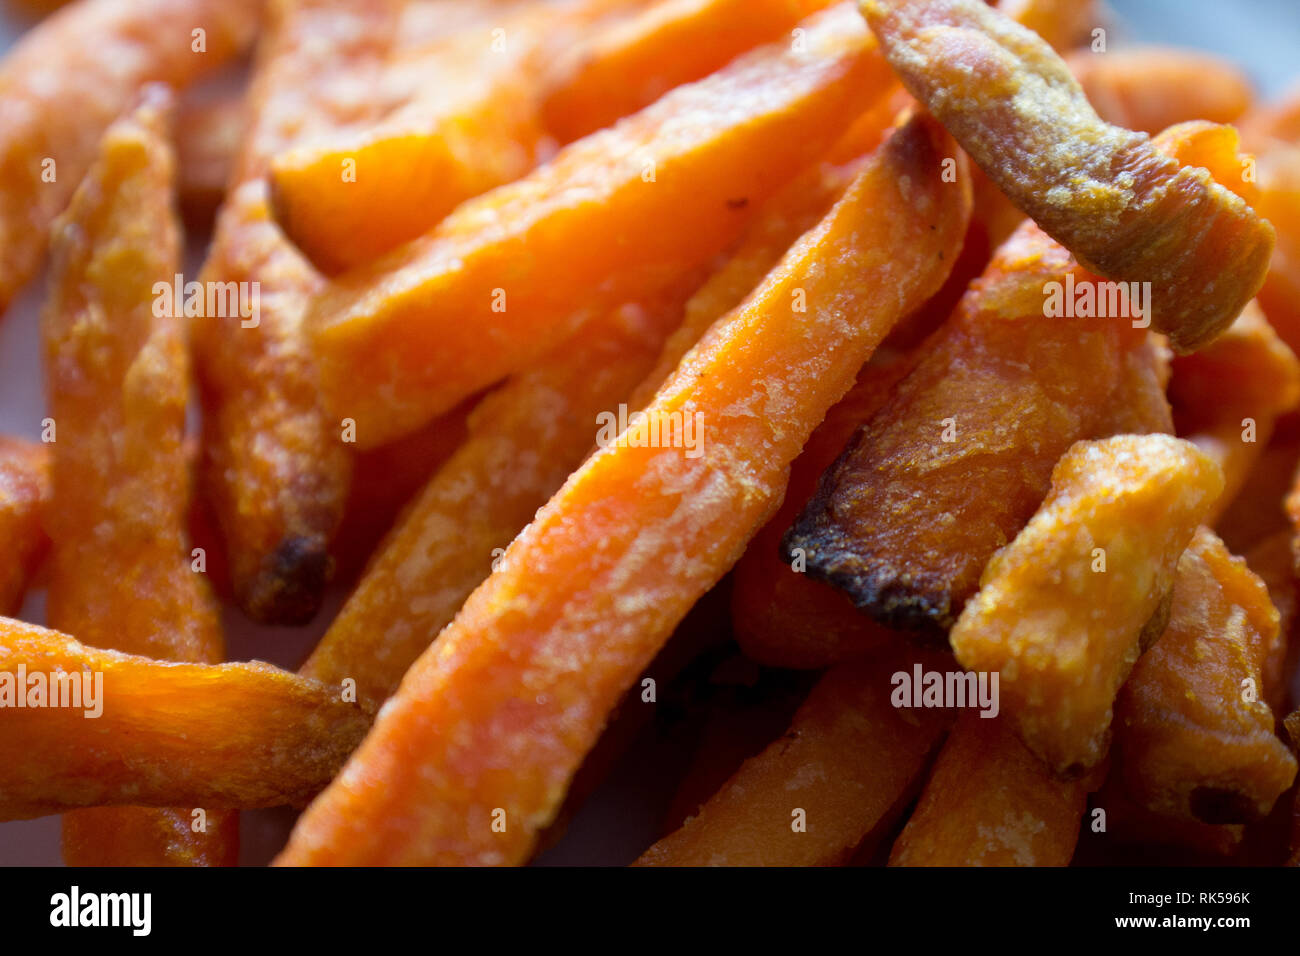 Sweet potato fires detail Stock Photo